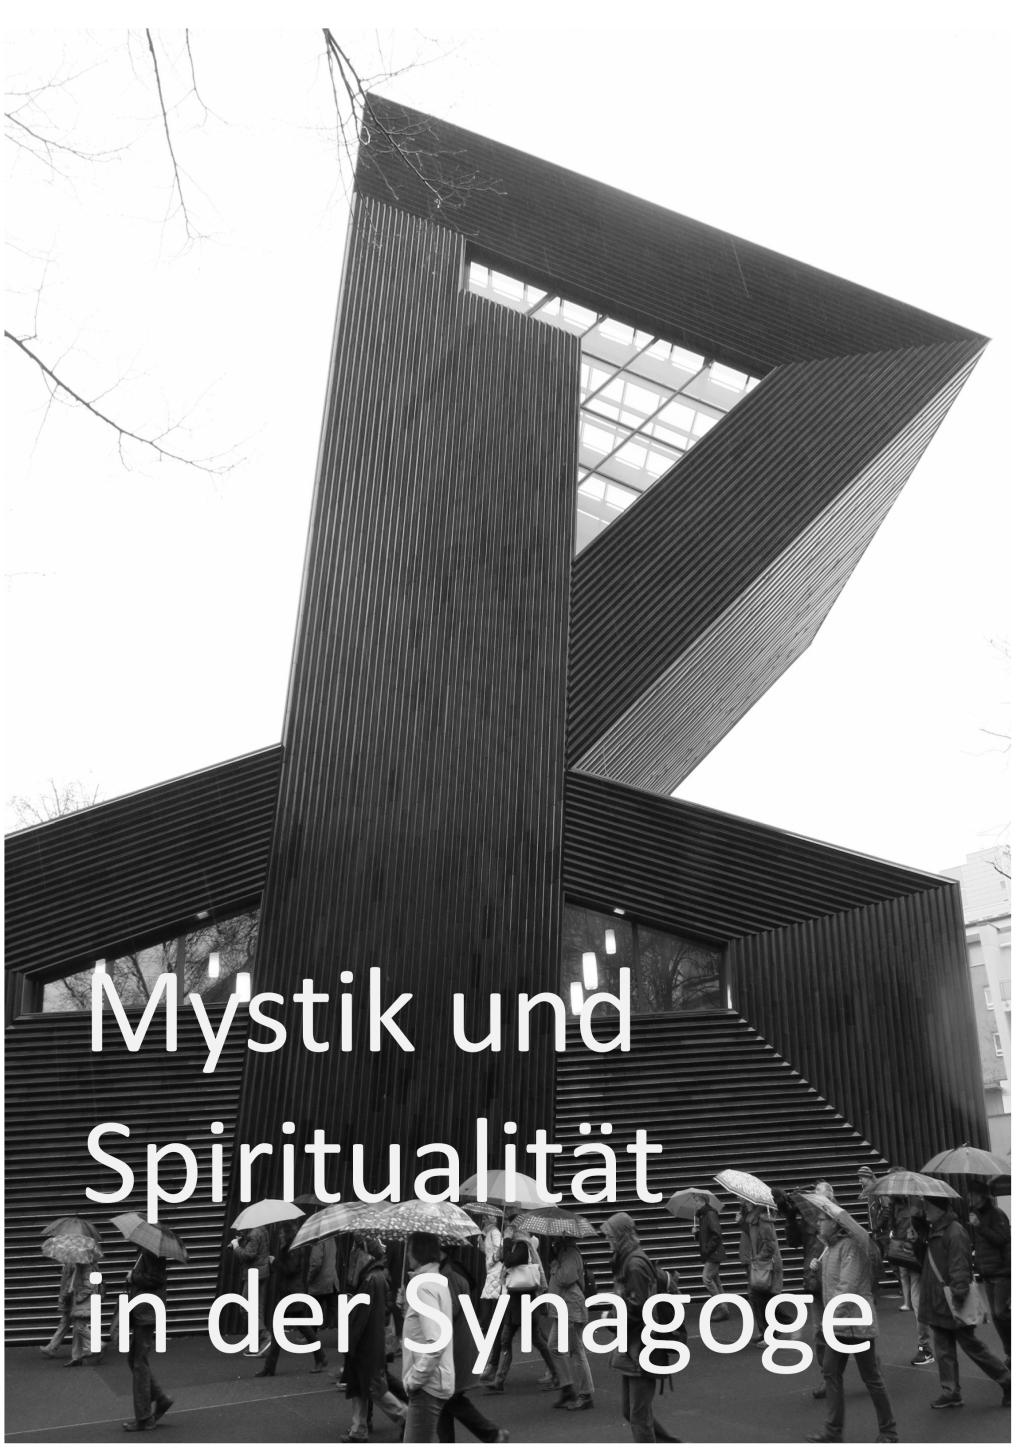 Mystik und Spiritualität in der Synagoge